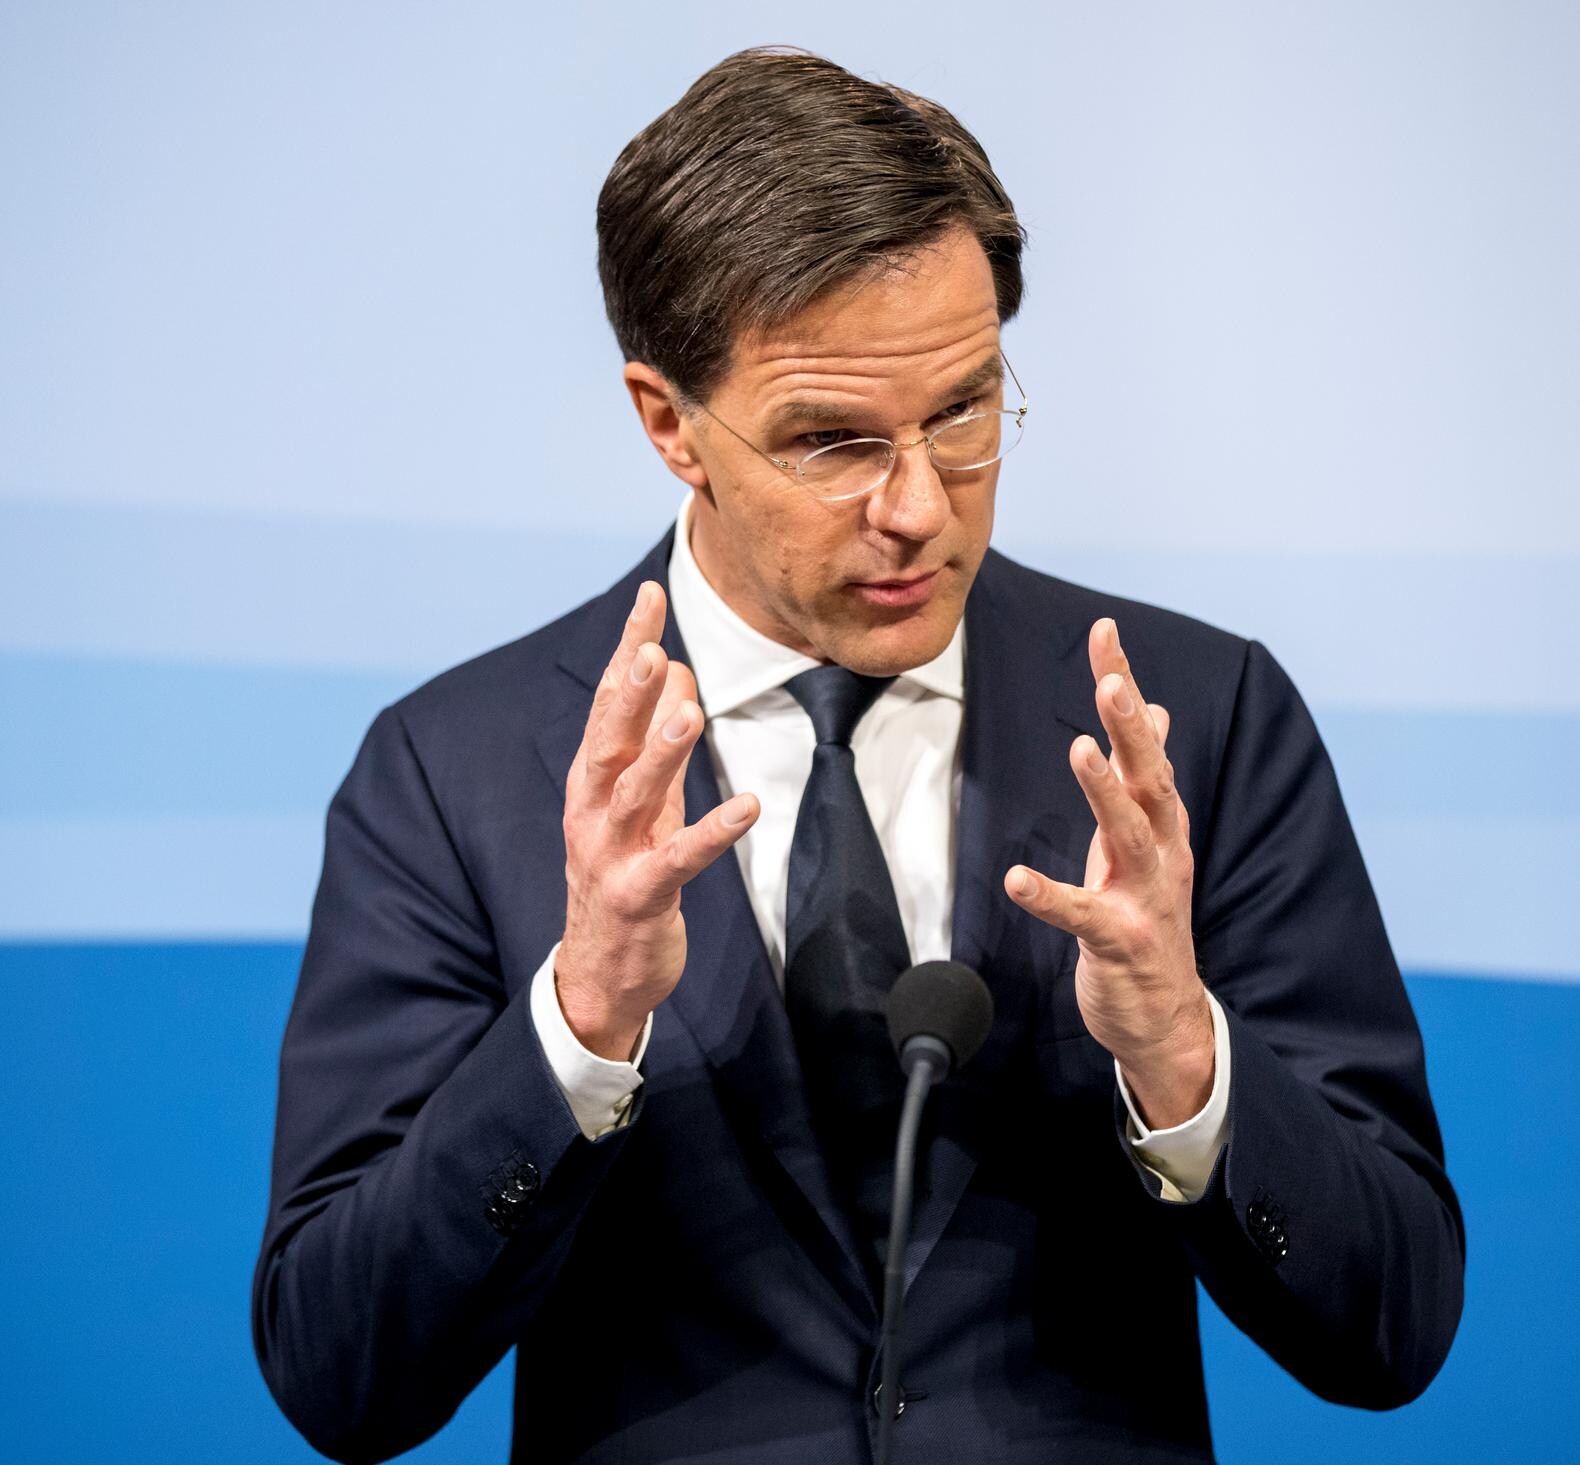 Opinie op zondag - Thomas von der Dunk: 'Kiezer moet einde maken aan tijdperk-Rutte'